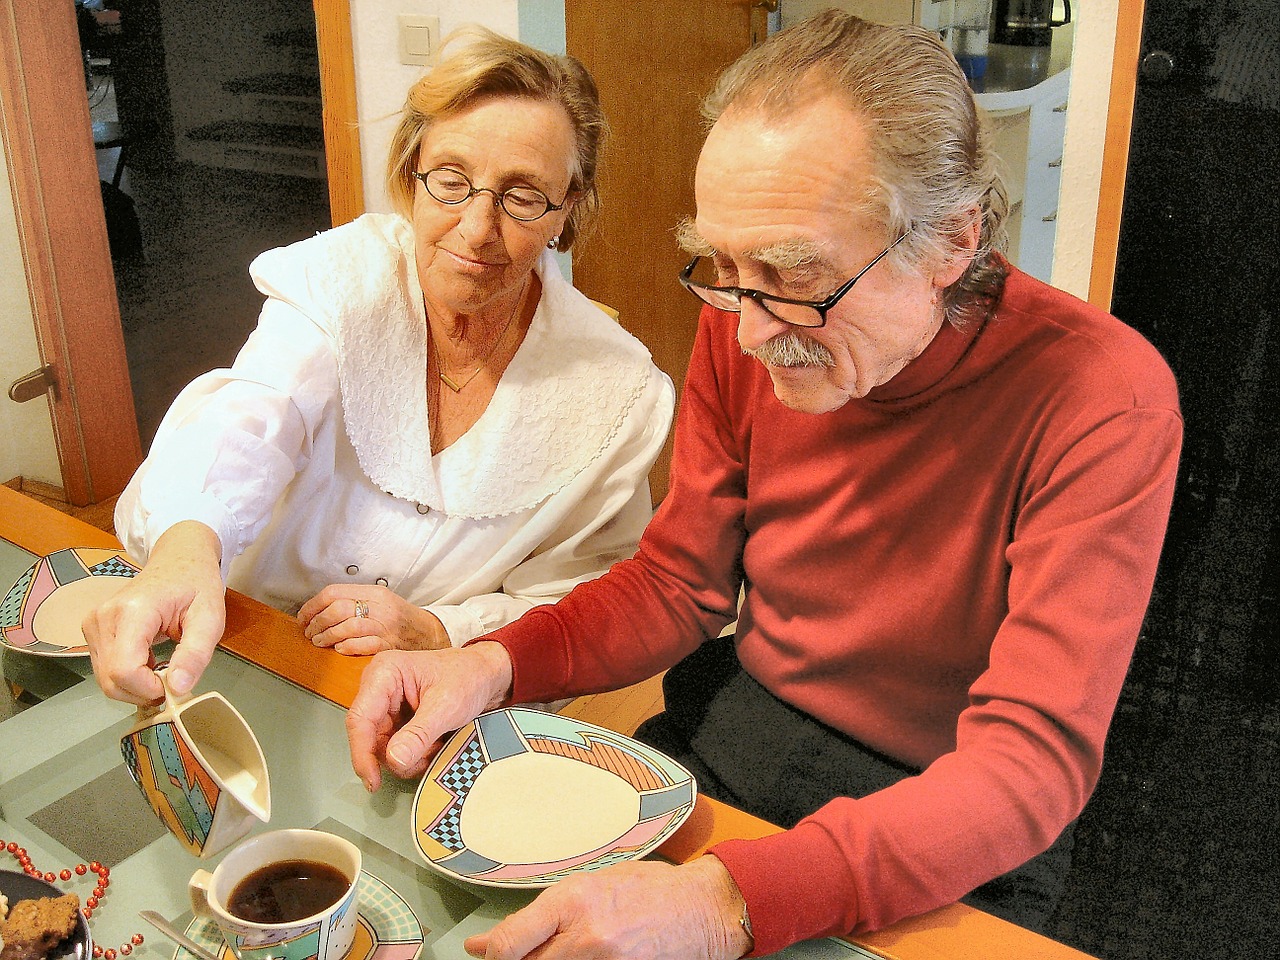 An elderly couple enjoying breakfast